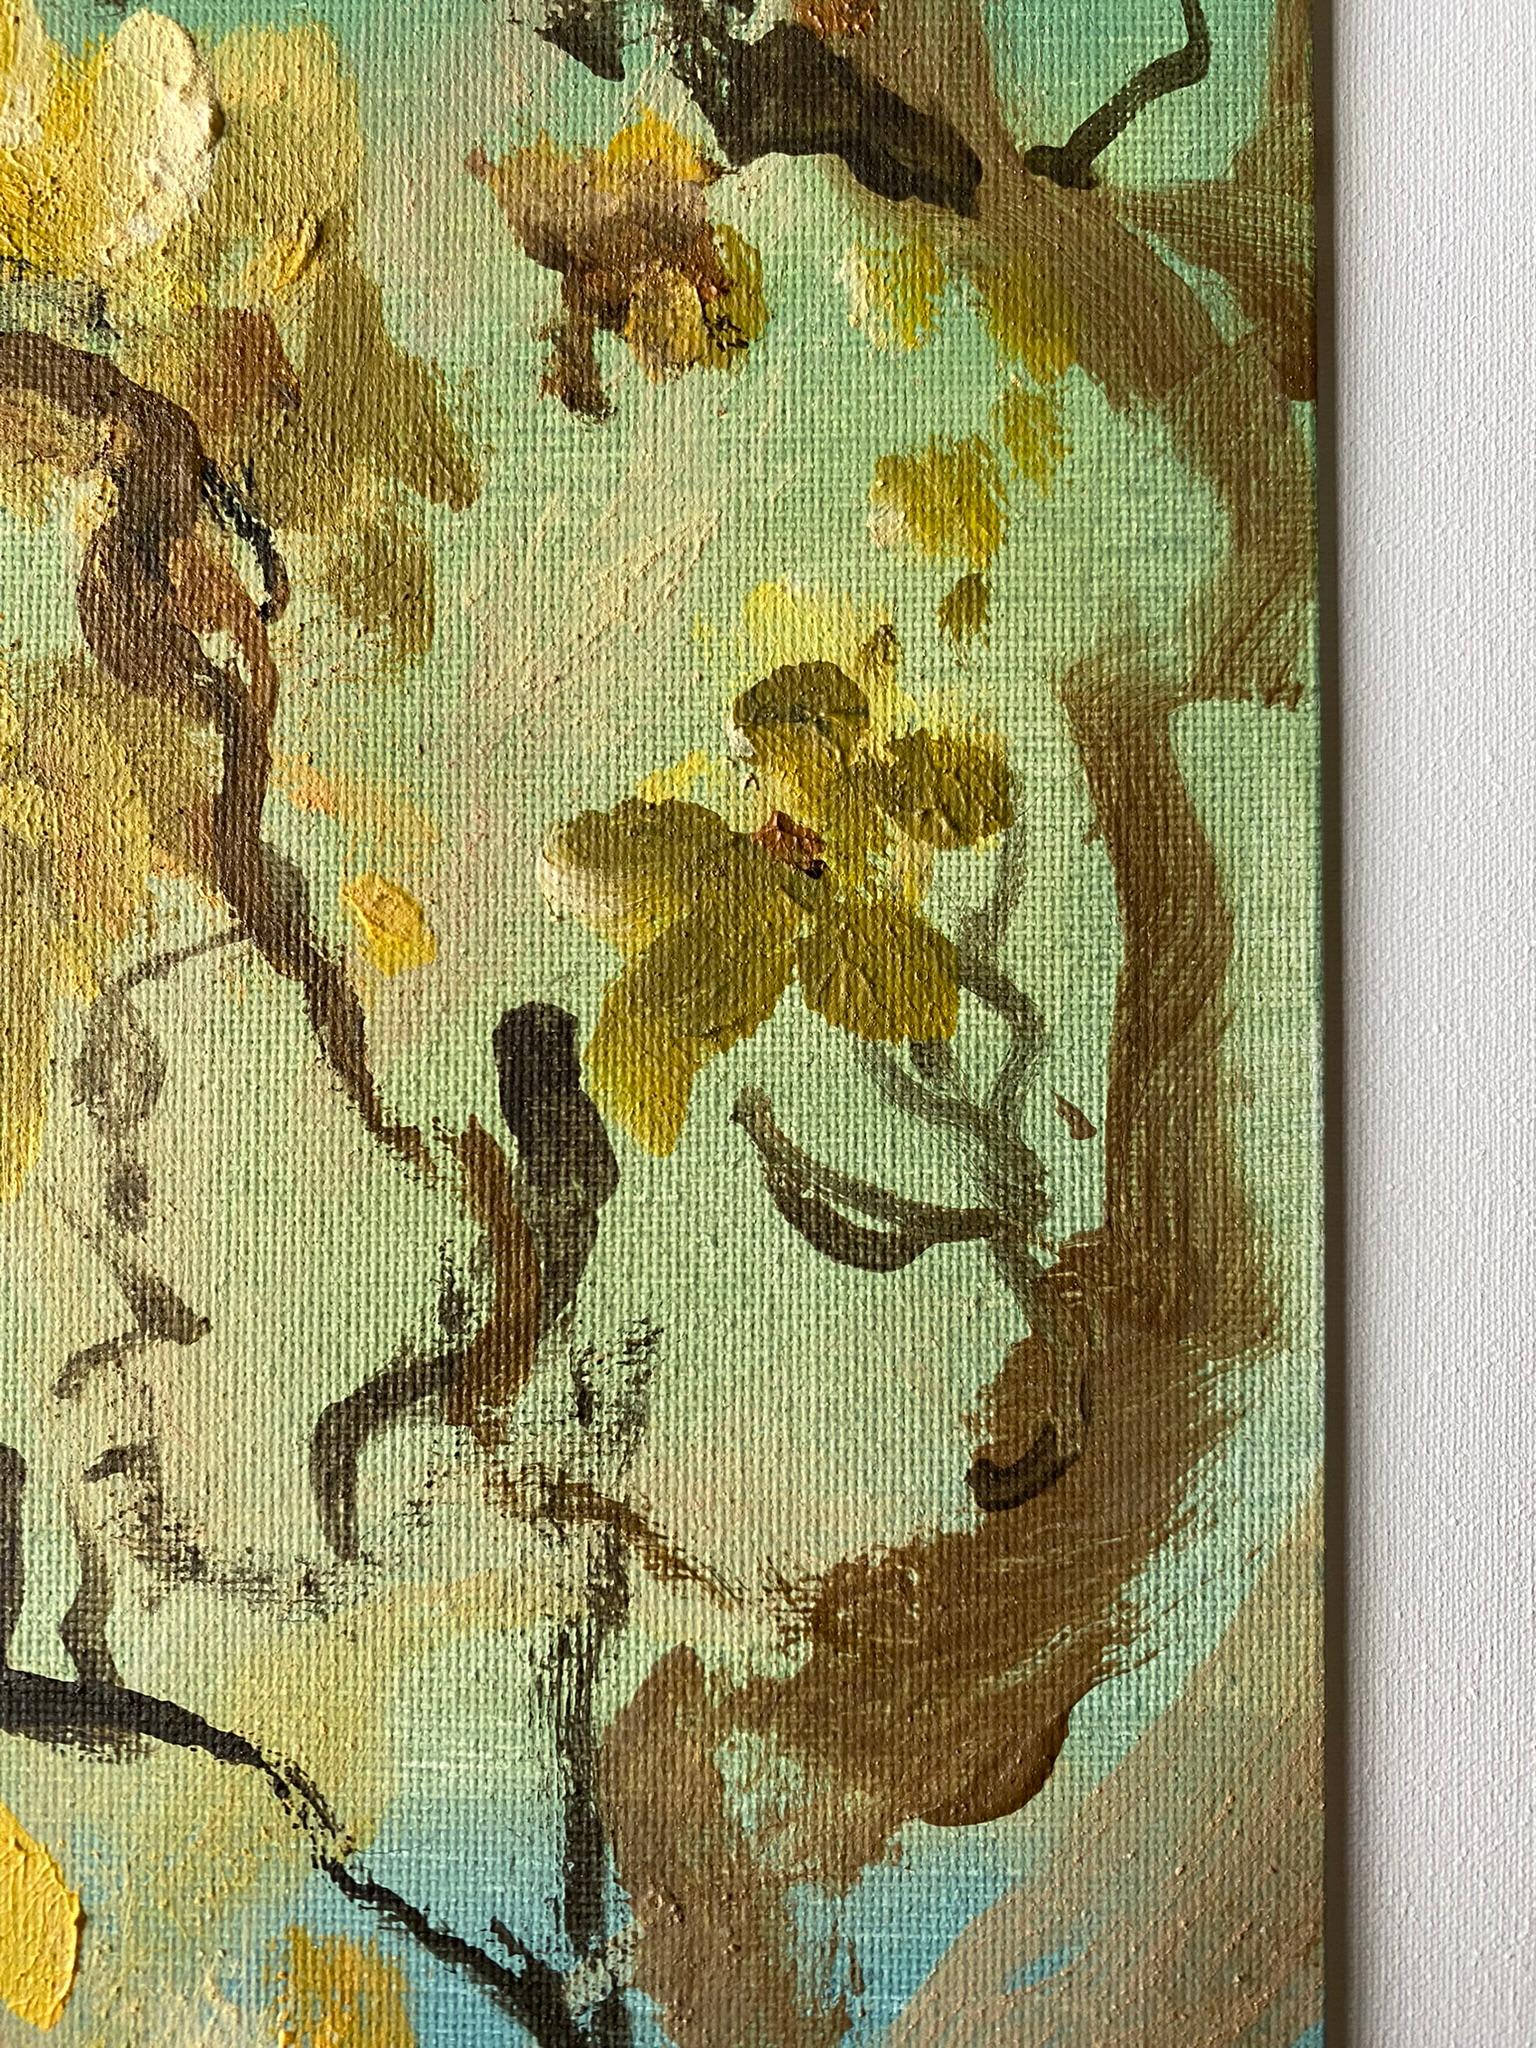 Original-Magnolias-Memory Landscape-UK Awarded Artist-oil on canvas board-Spring For Sale 12